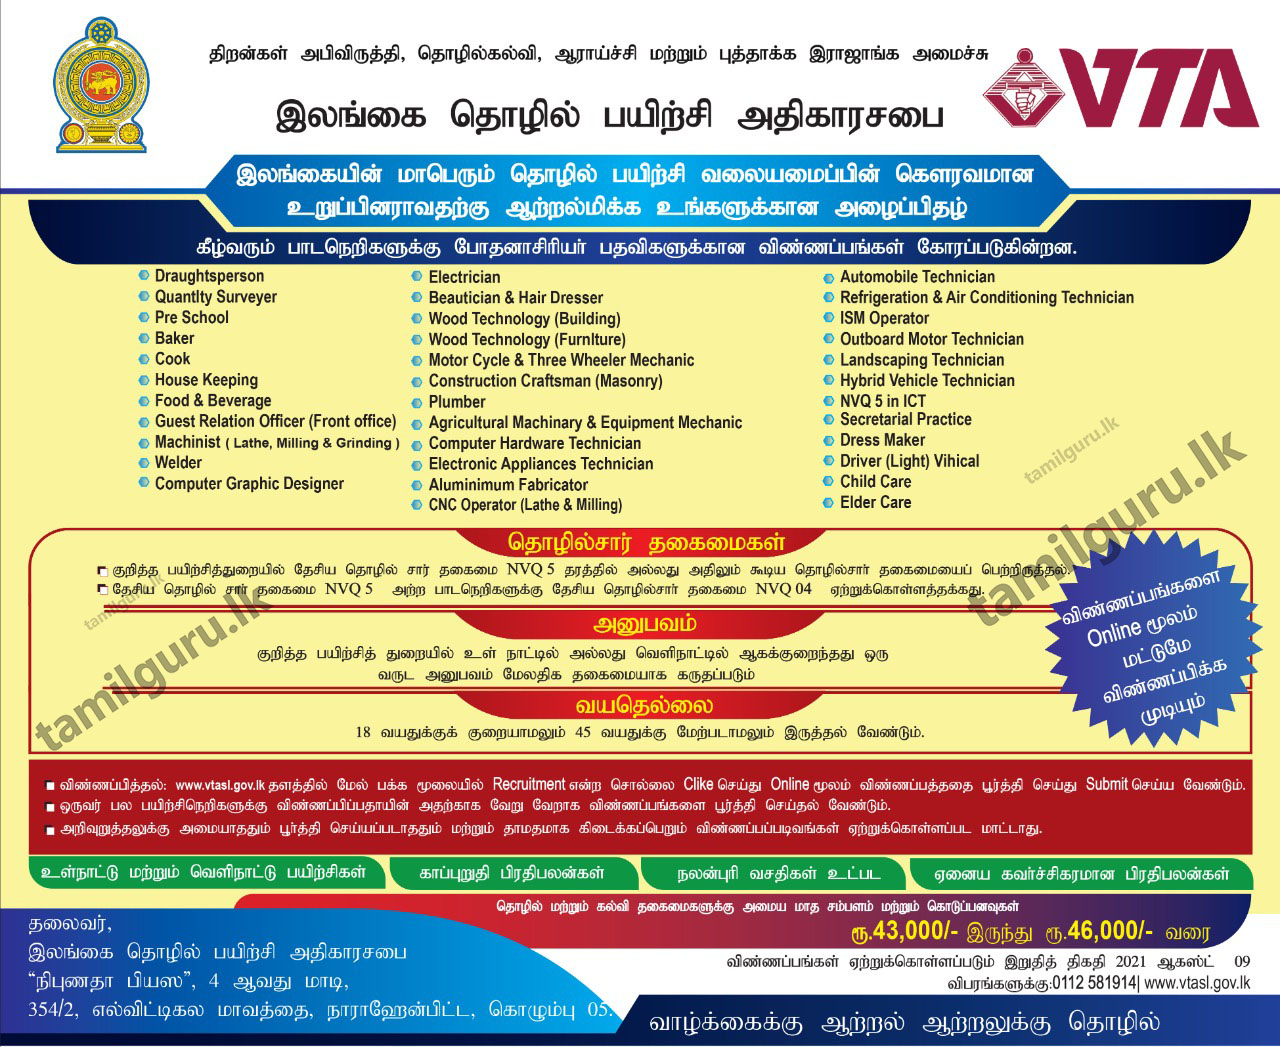 VTA Instructor Vacancies 2021 Notice in Tamil